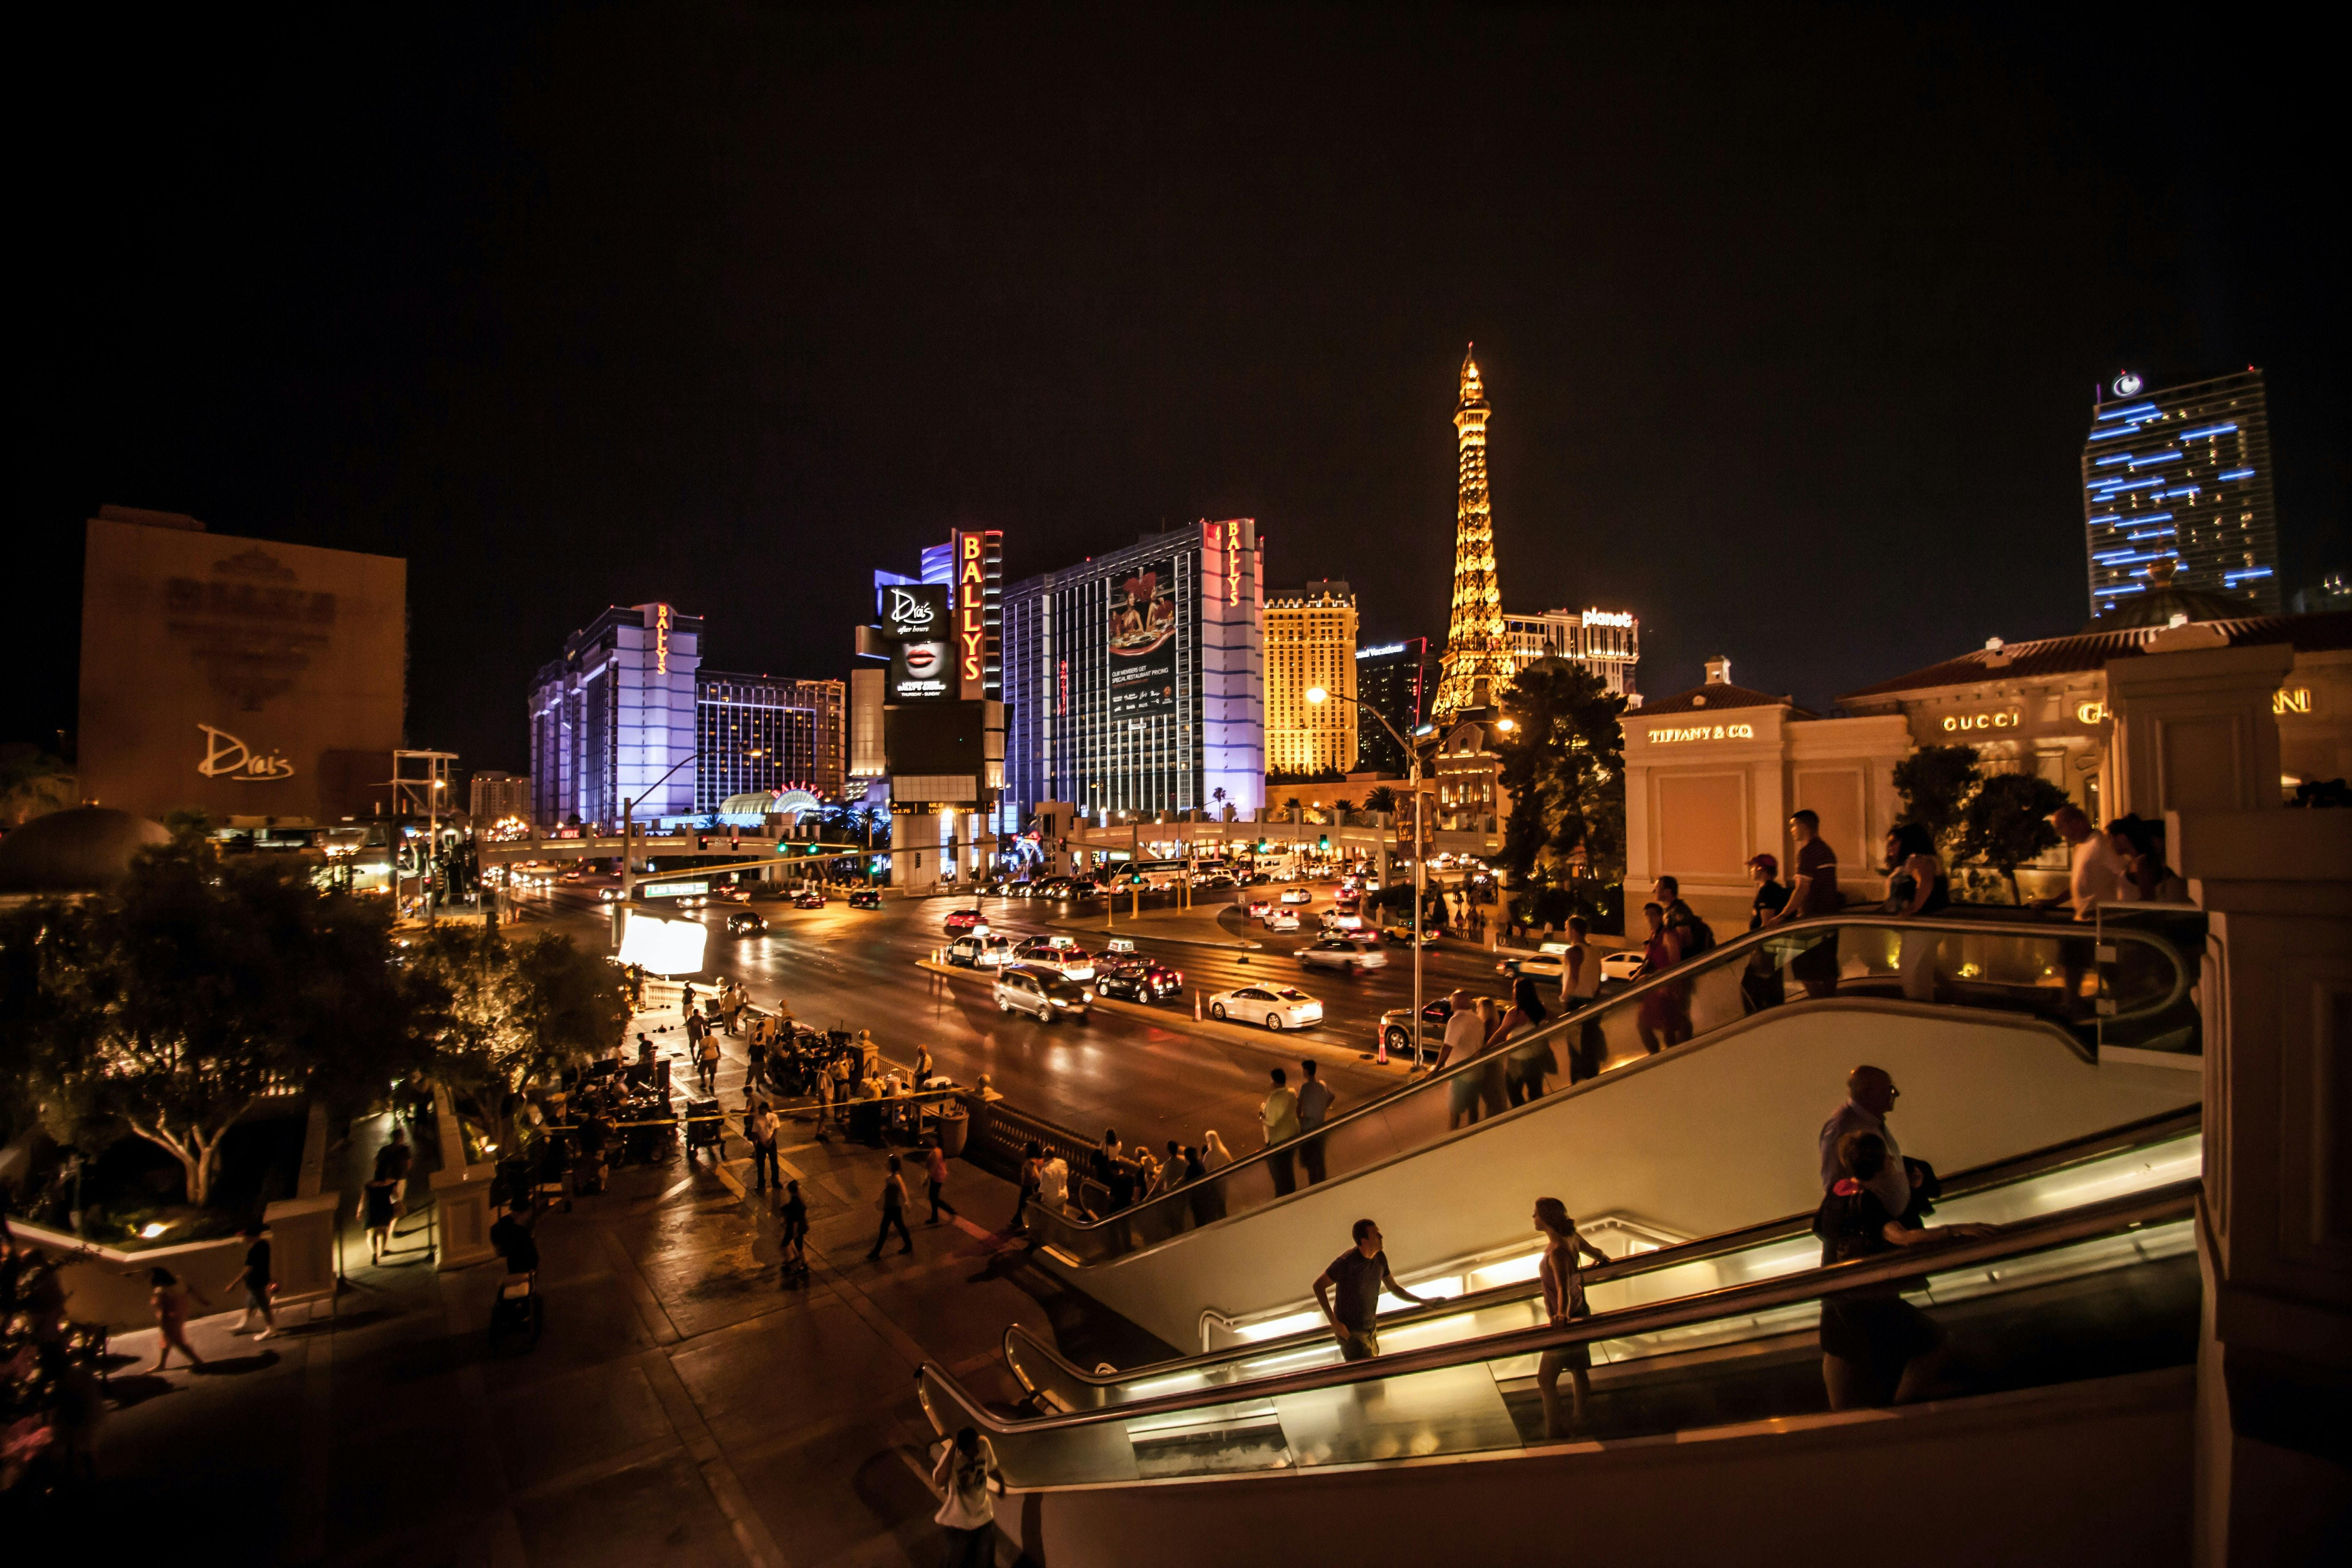 The Las Vegas Strip at night